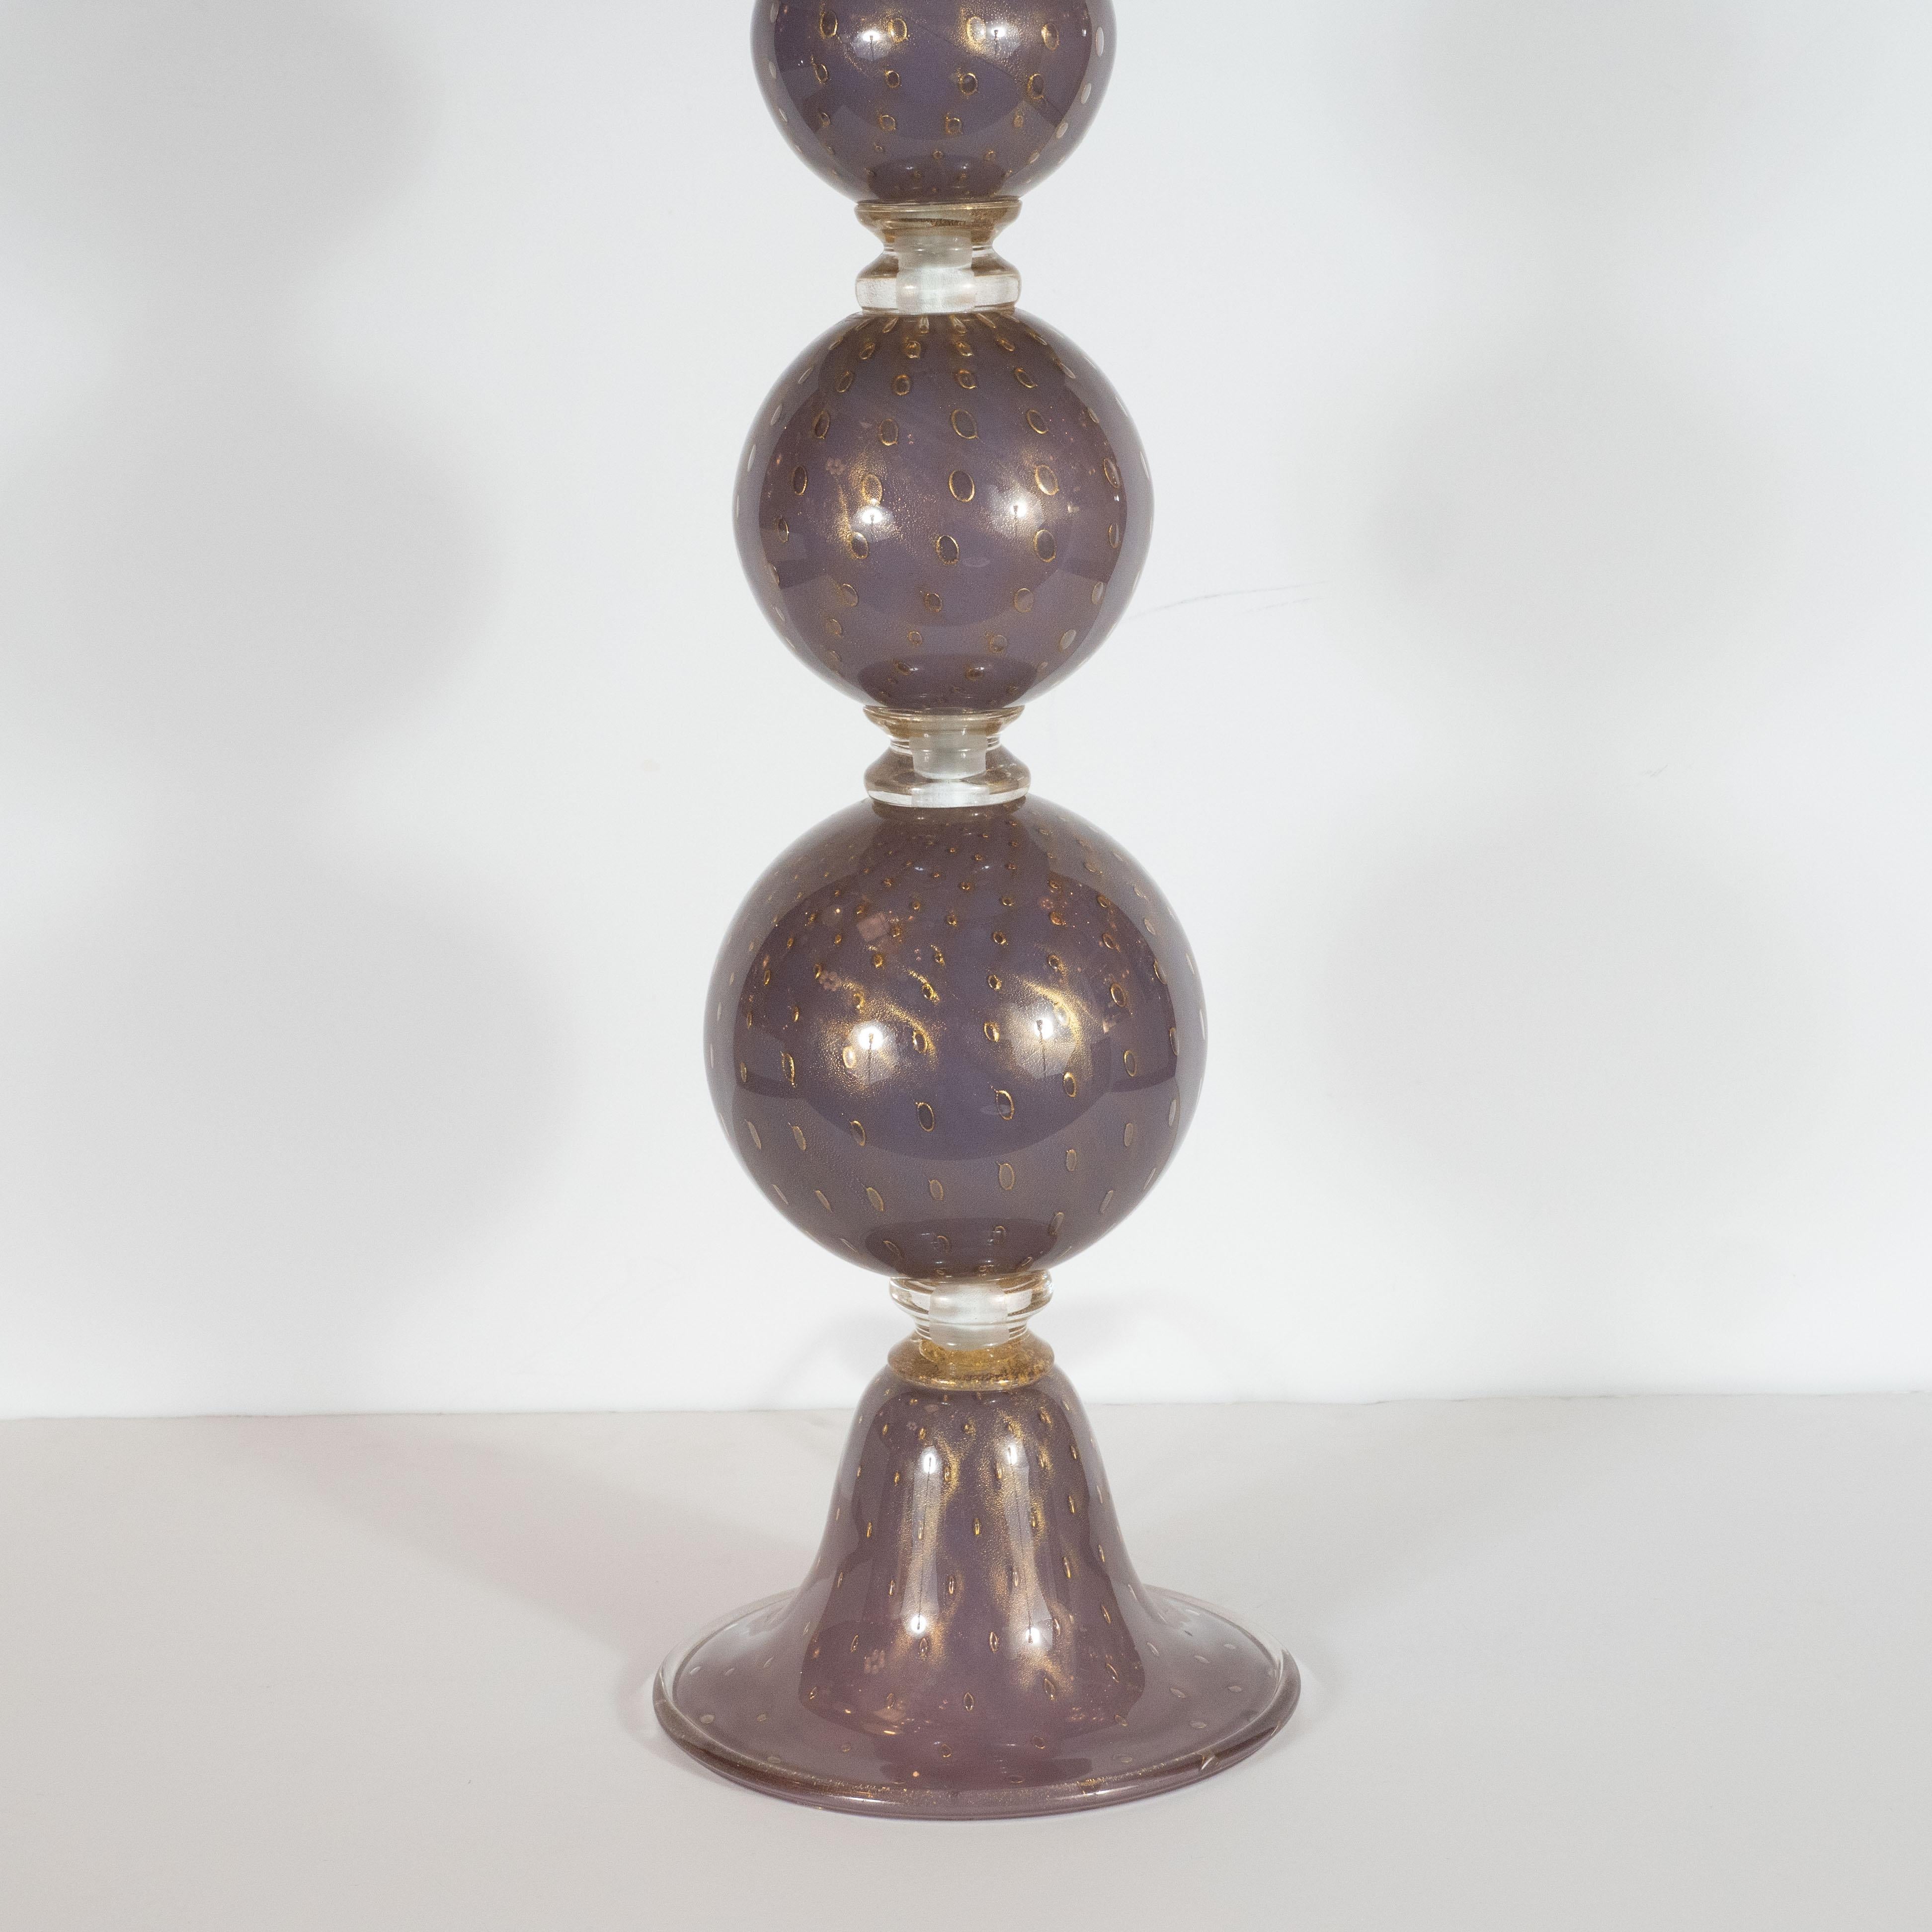 Cette étonnante paire de lampes de table a été soufflée à la main à Murano, en Italie, l'île située au large de Venise, réputée depuis des siècles pour sa production de verre exceptionnelle. Elles présentent trois formes sphériques s'élevant d'une